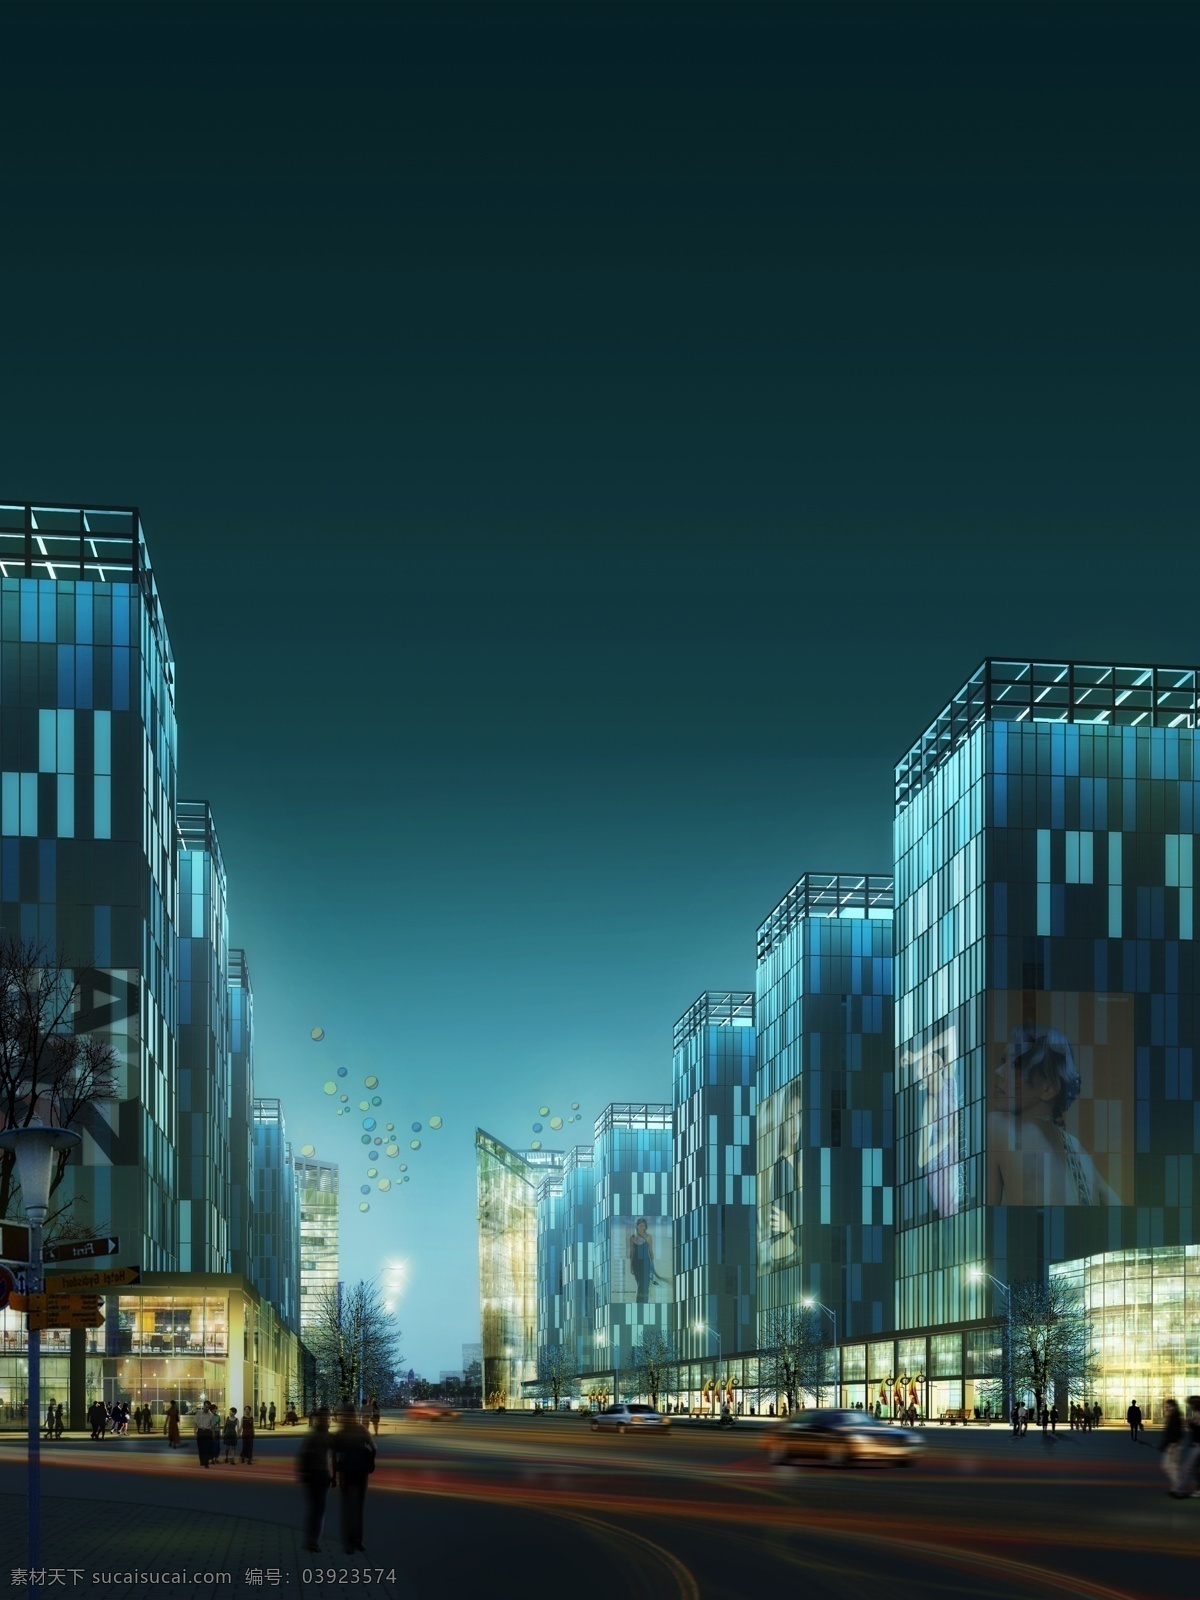 商业街 夜景 效果 人物 汽车 马路 路灯 树木 商场 房屋 建筑物 蓝黑色天空 环境设计 景观设计 青色 天蓝色